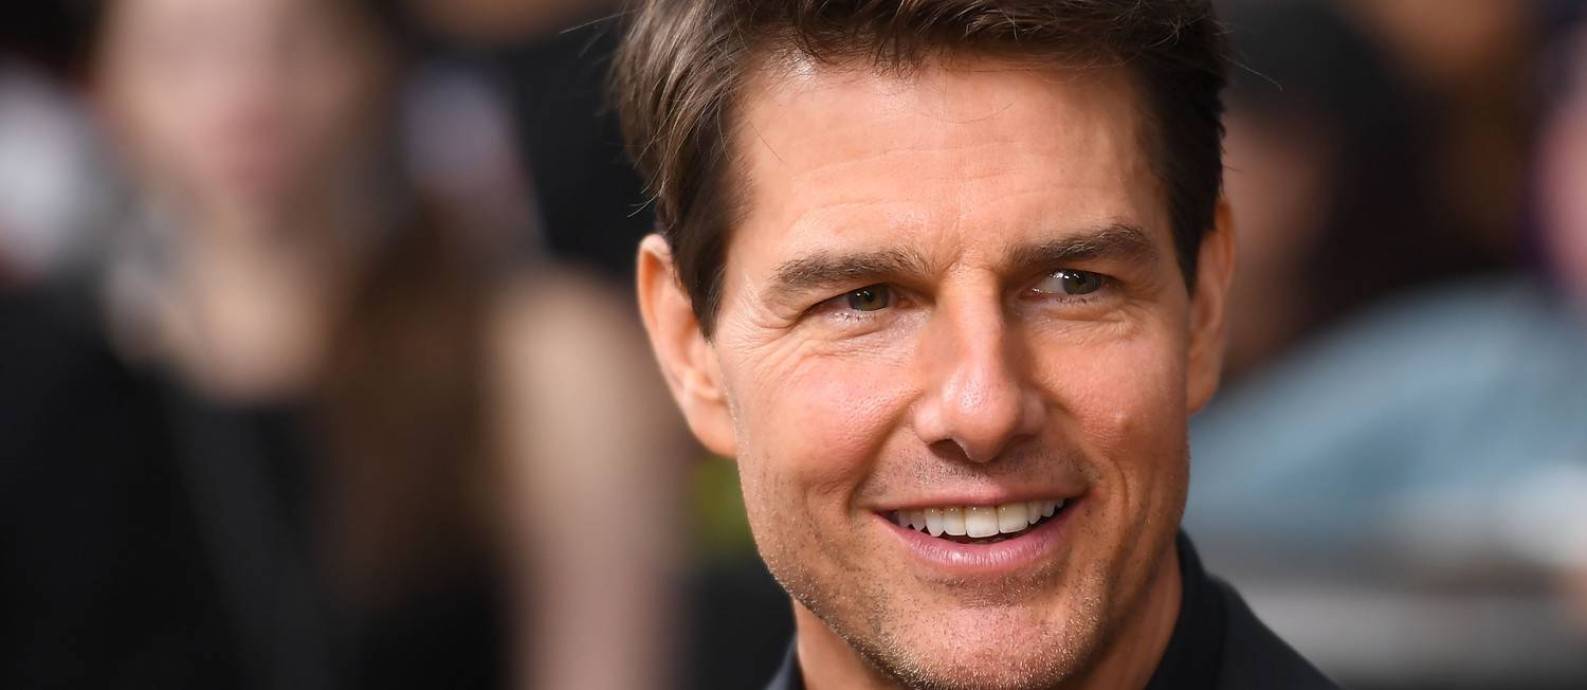 NASA confirma filme com Tom Cruise no espaço